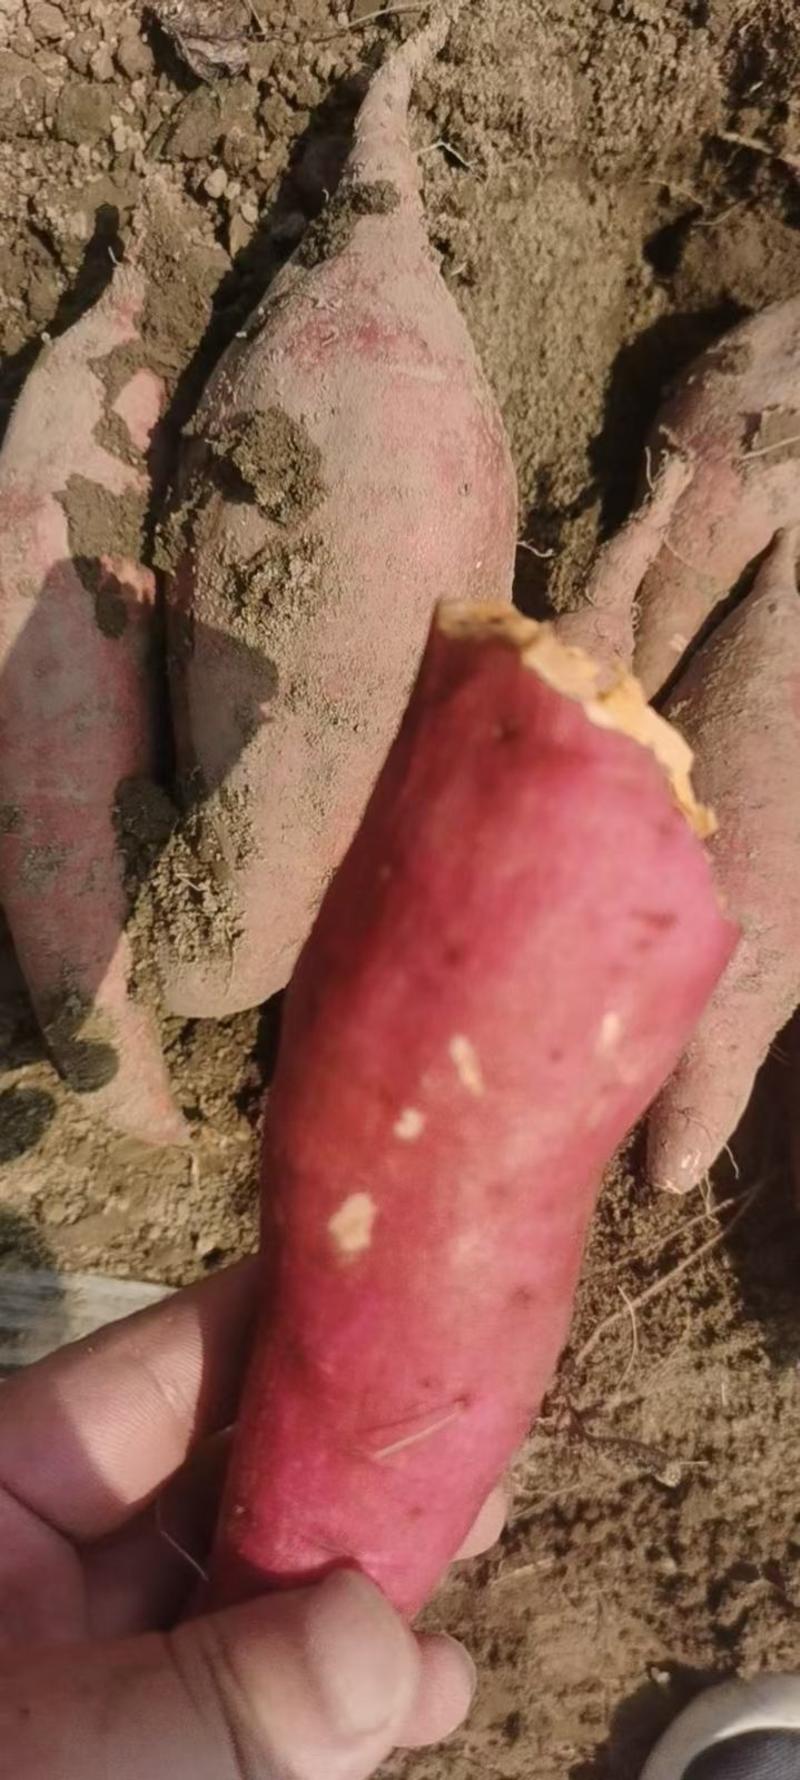 西瓜红红薯